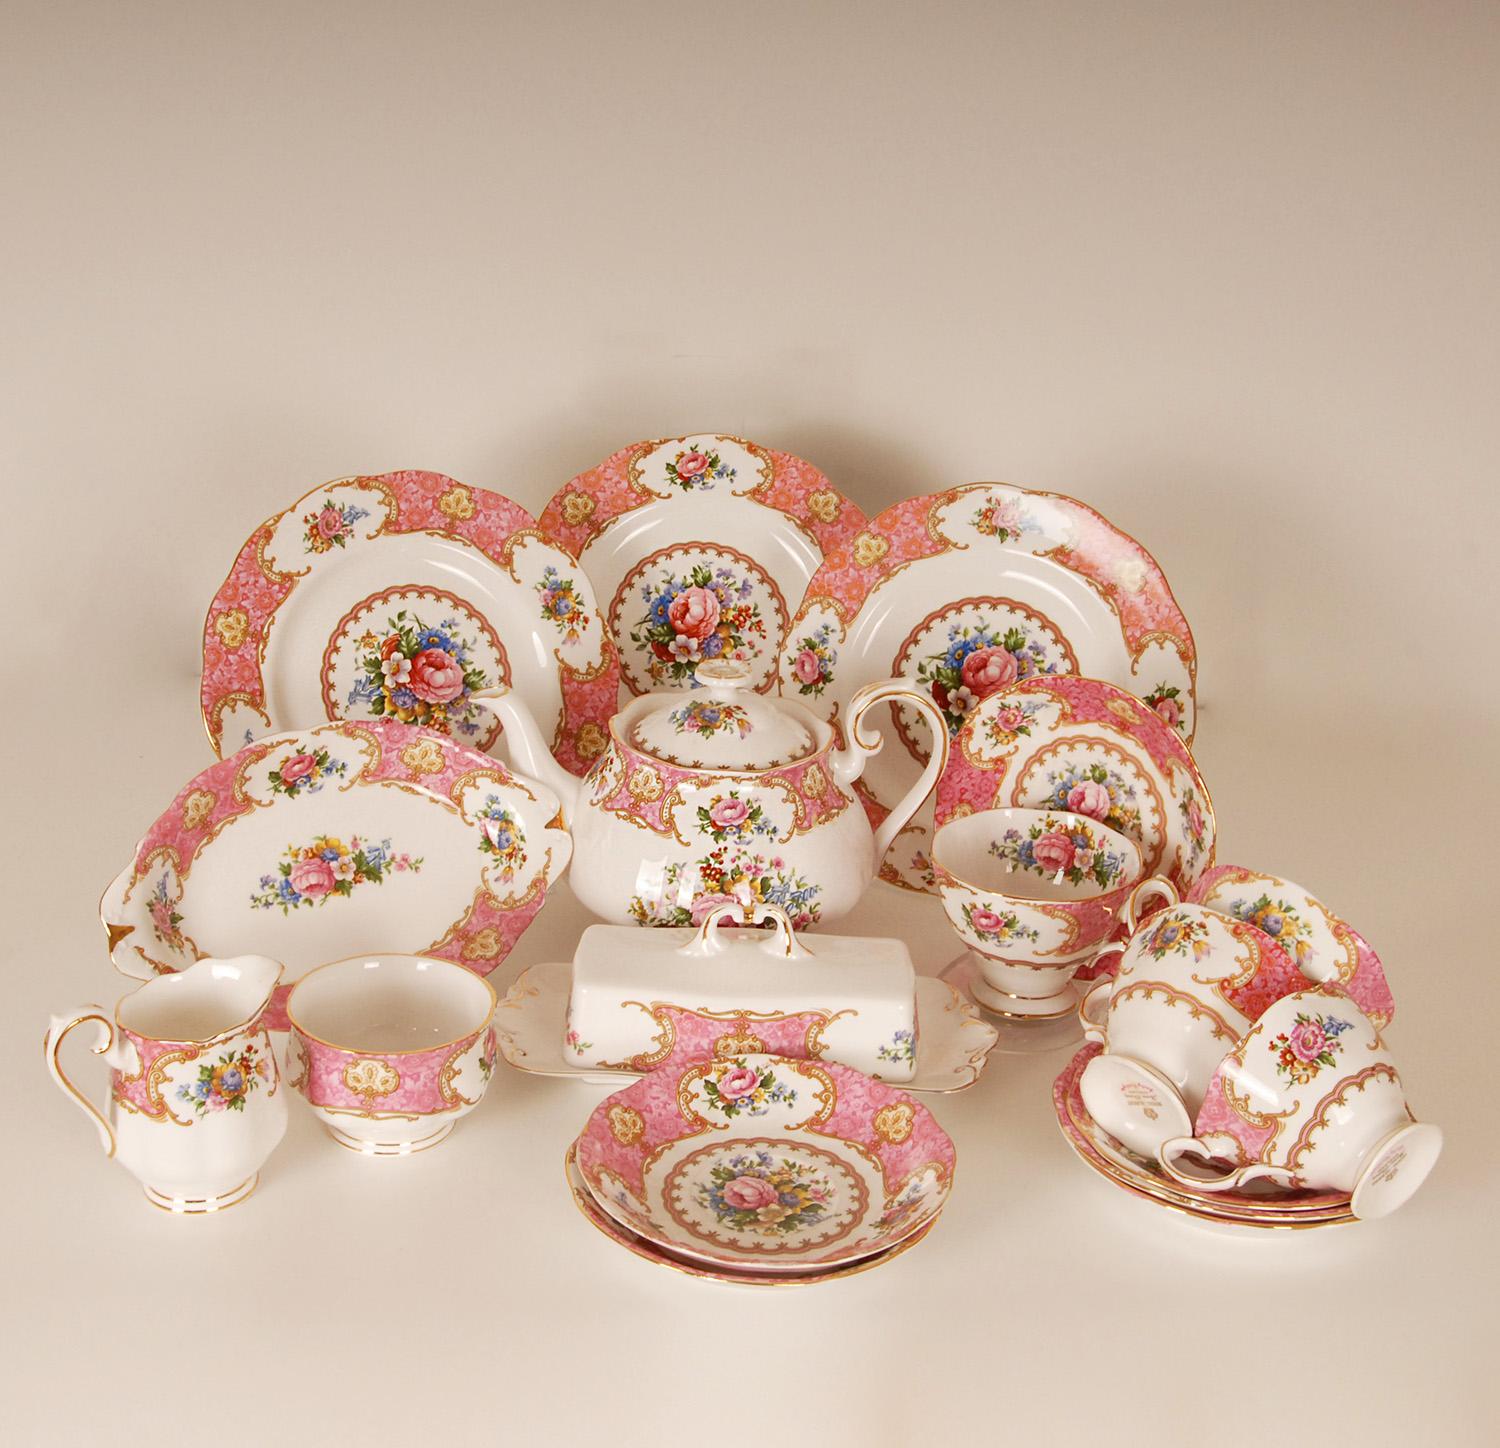 Superbe porcelaine anglaise - Service à thé en porcelaine osseuse de Royal Albert.
Décorée avec le très convoité motif Lady Carlyle.
Fabuleux avec des gerbes de fleurs et une bande festonnée rose bordée d'une bande couleur feu et de guirlandes.